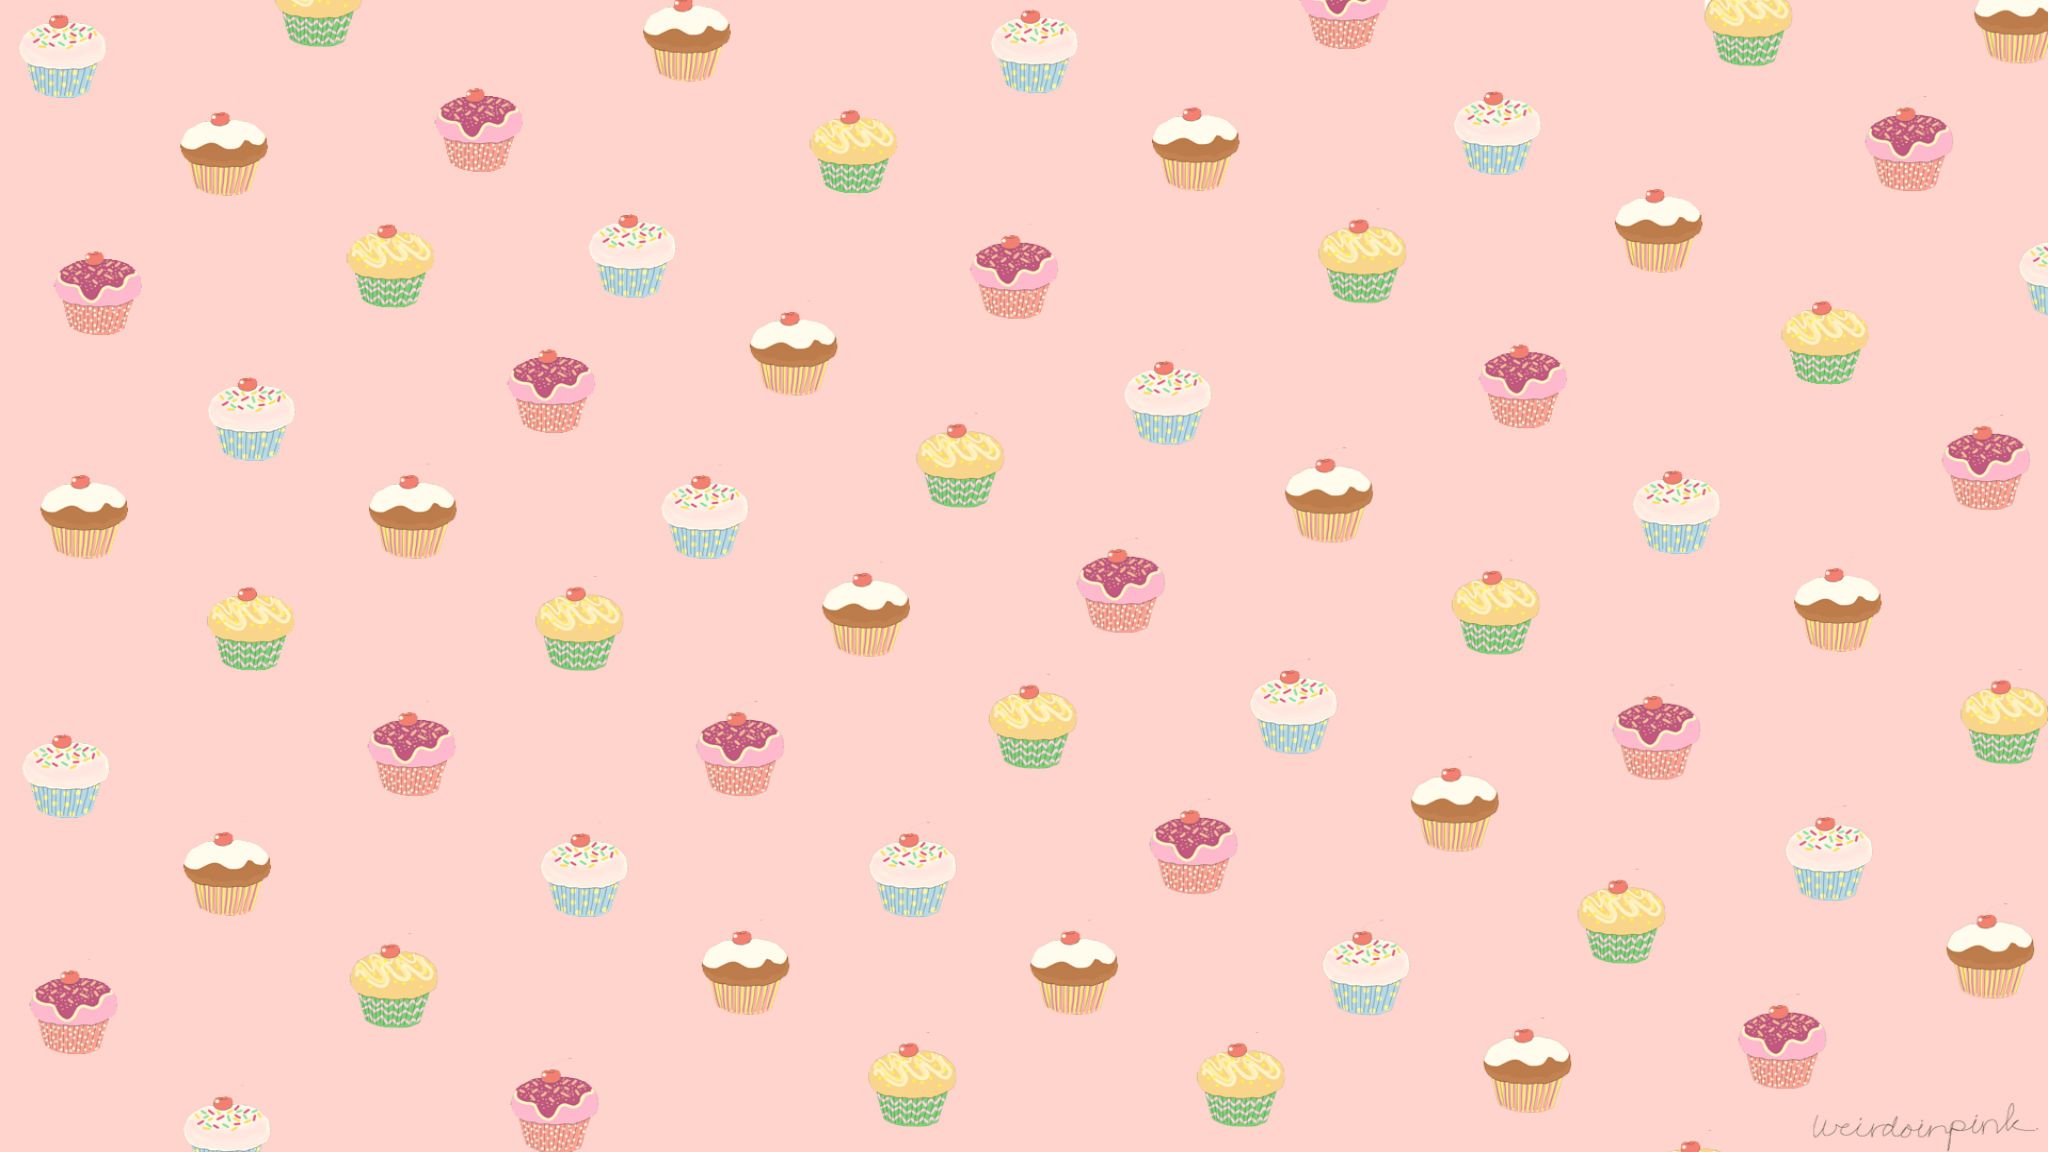 Nếu bạn yêu thích cupcake và muốn tìm kiếm nền phù hợp, nền 2048x1152 bánh cupcakes là sự lựa chọn tuyệt vời. Với hình ảnh ngọt ngào và đầy màu sắc, nền này chắc chắn sẽ mang đến cho bạn nhiều niềm vui và cảm xúc. Hãy xem hình ảnh liên quan để thấy sự độc đáo của nền này.